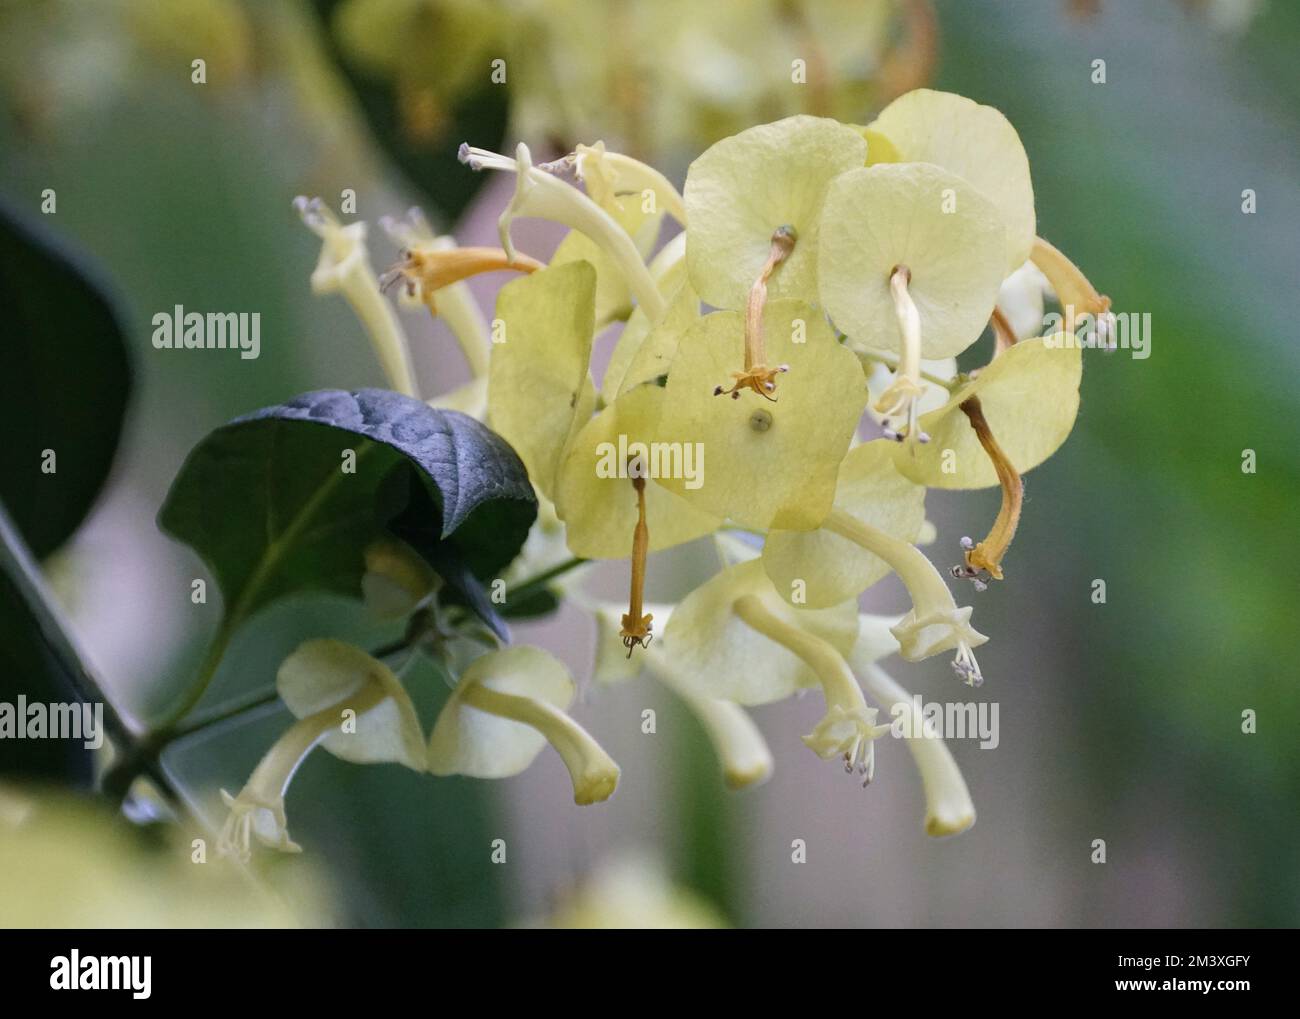 Gros plan de la fleur jaune clair du chapeau chinois 'citrina' avec le nom scientifique Holmskioldia sanguinea Banque D'Images